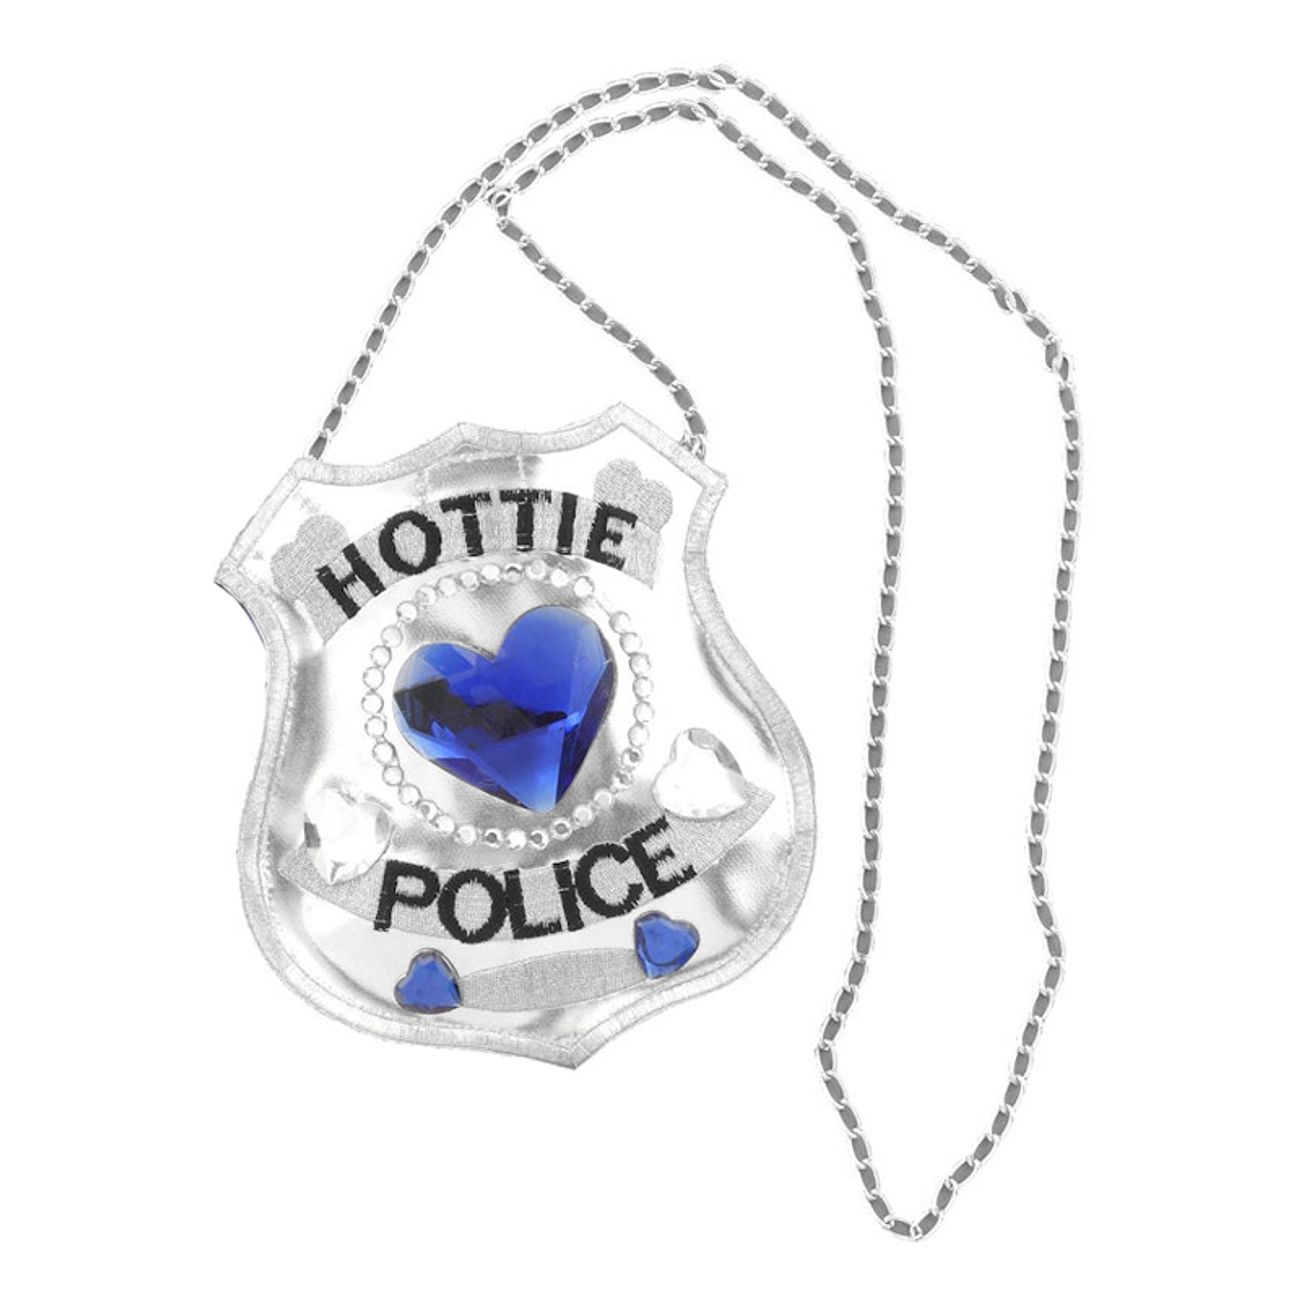 hottie-police-handvaska-1